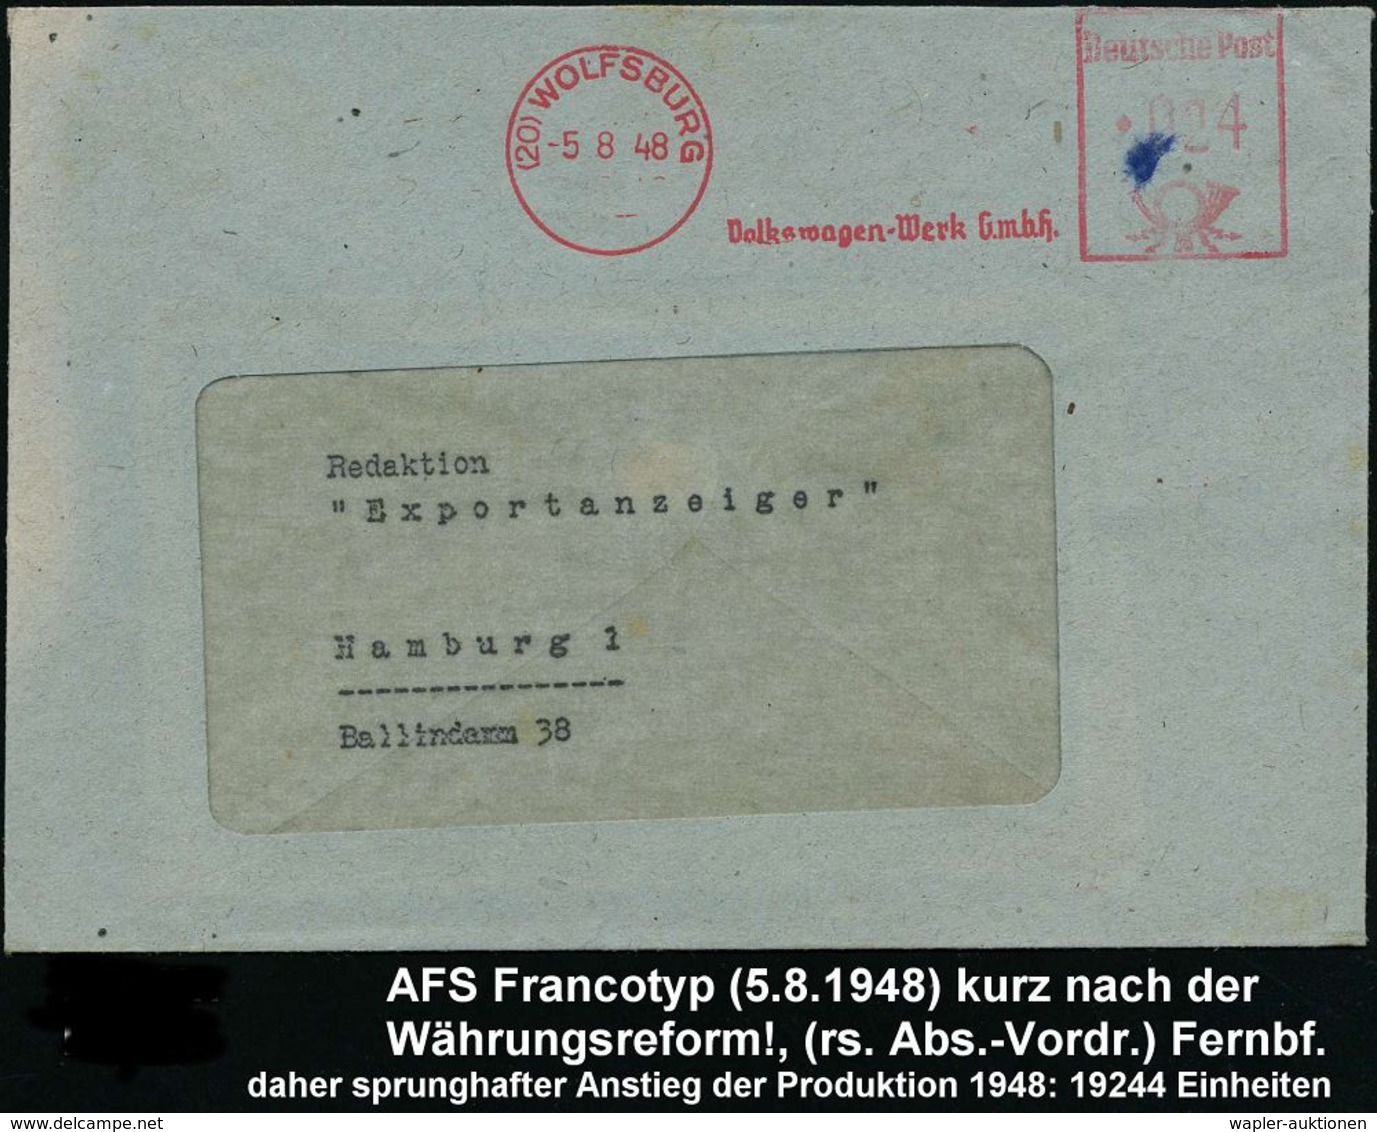 VOLKSWAGEN / VW / K.-D.-F.-WAGEN / PORSCHE : (20) WOLFSBURG/ Volkswagen-Werk GmbH 1948 (5.8.) AFS, Rs. Abs.-Vordruck Aus - Automobili